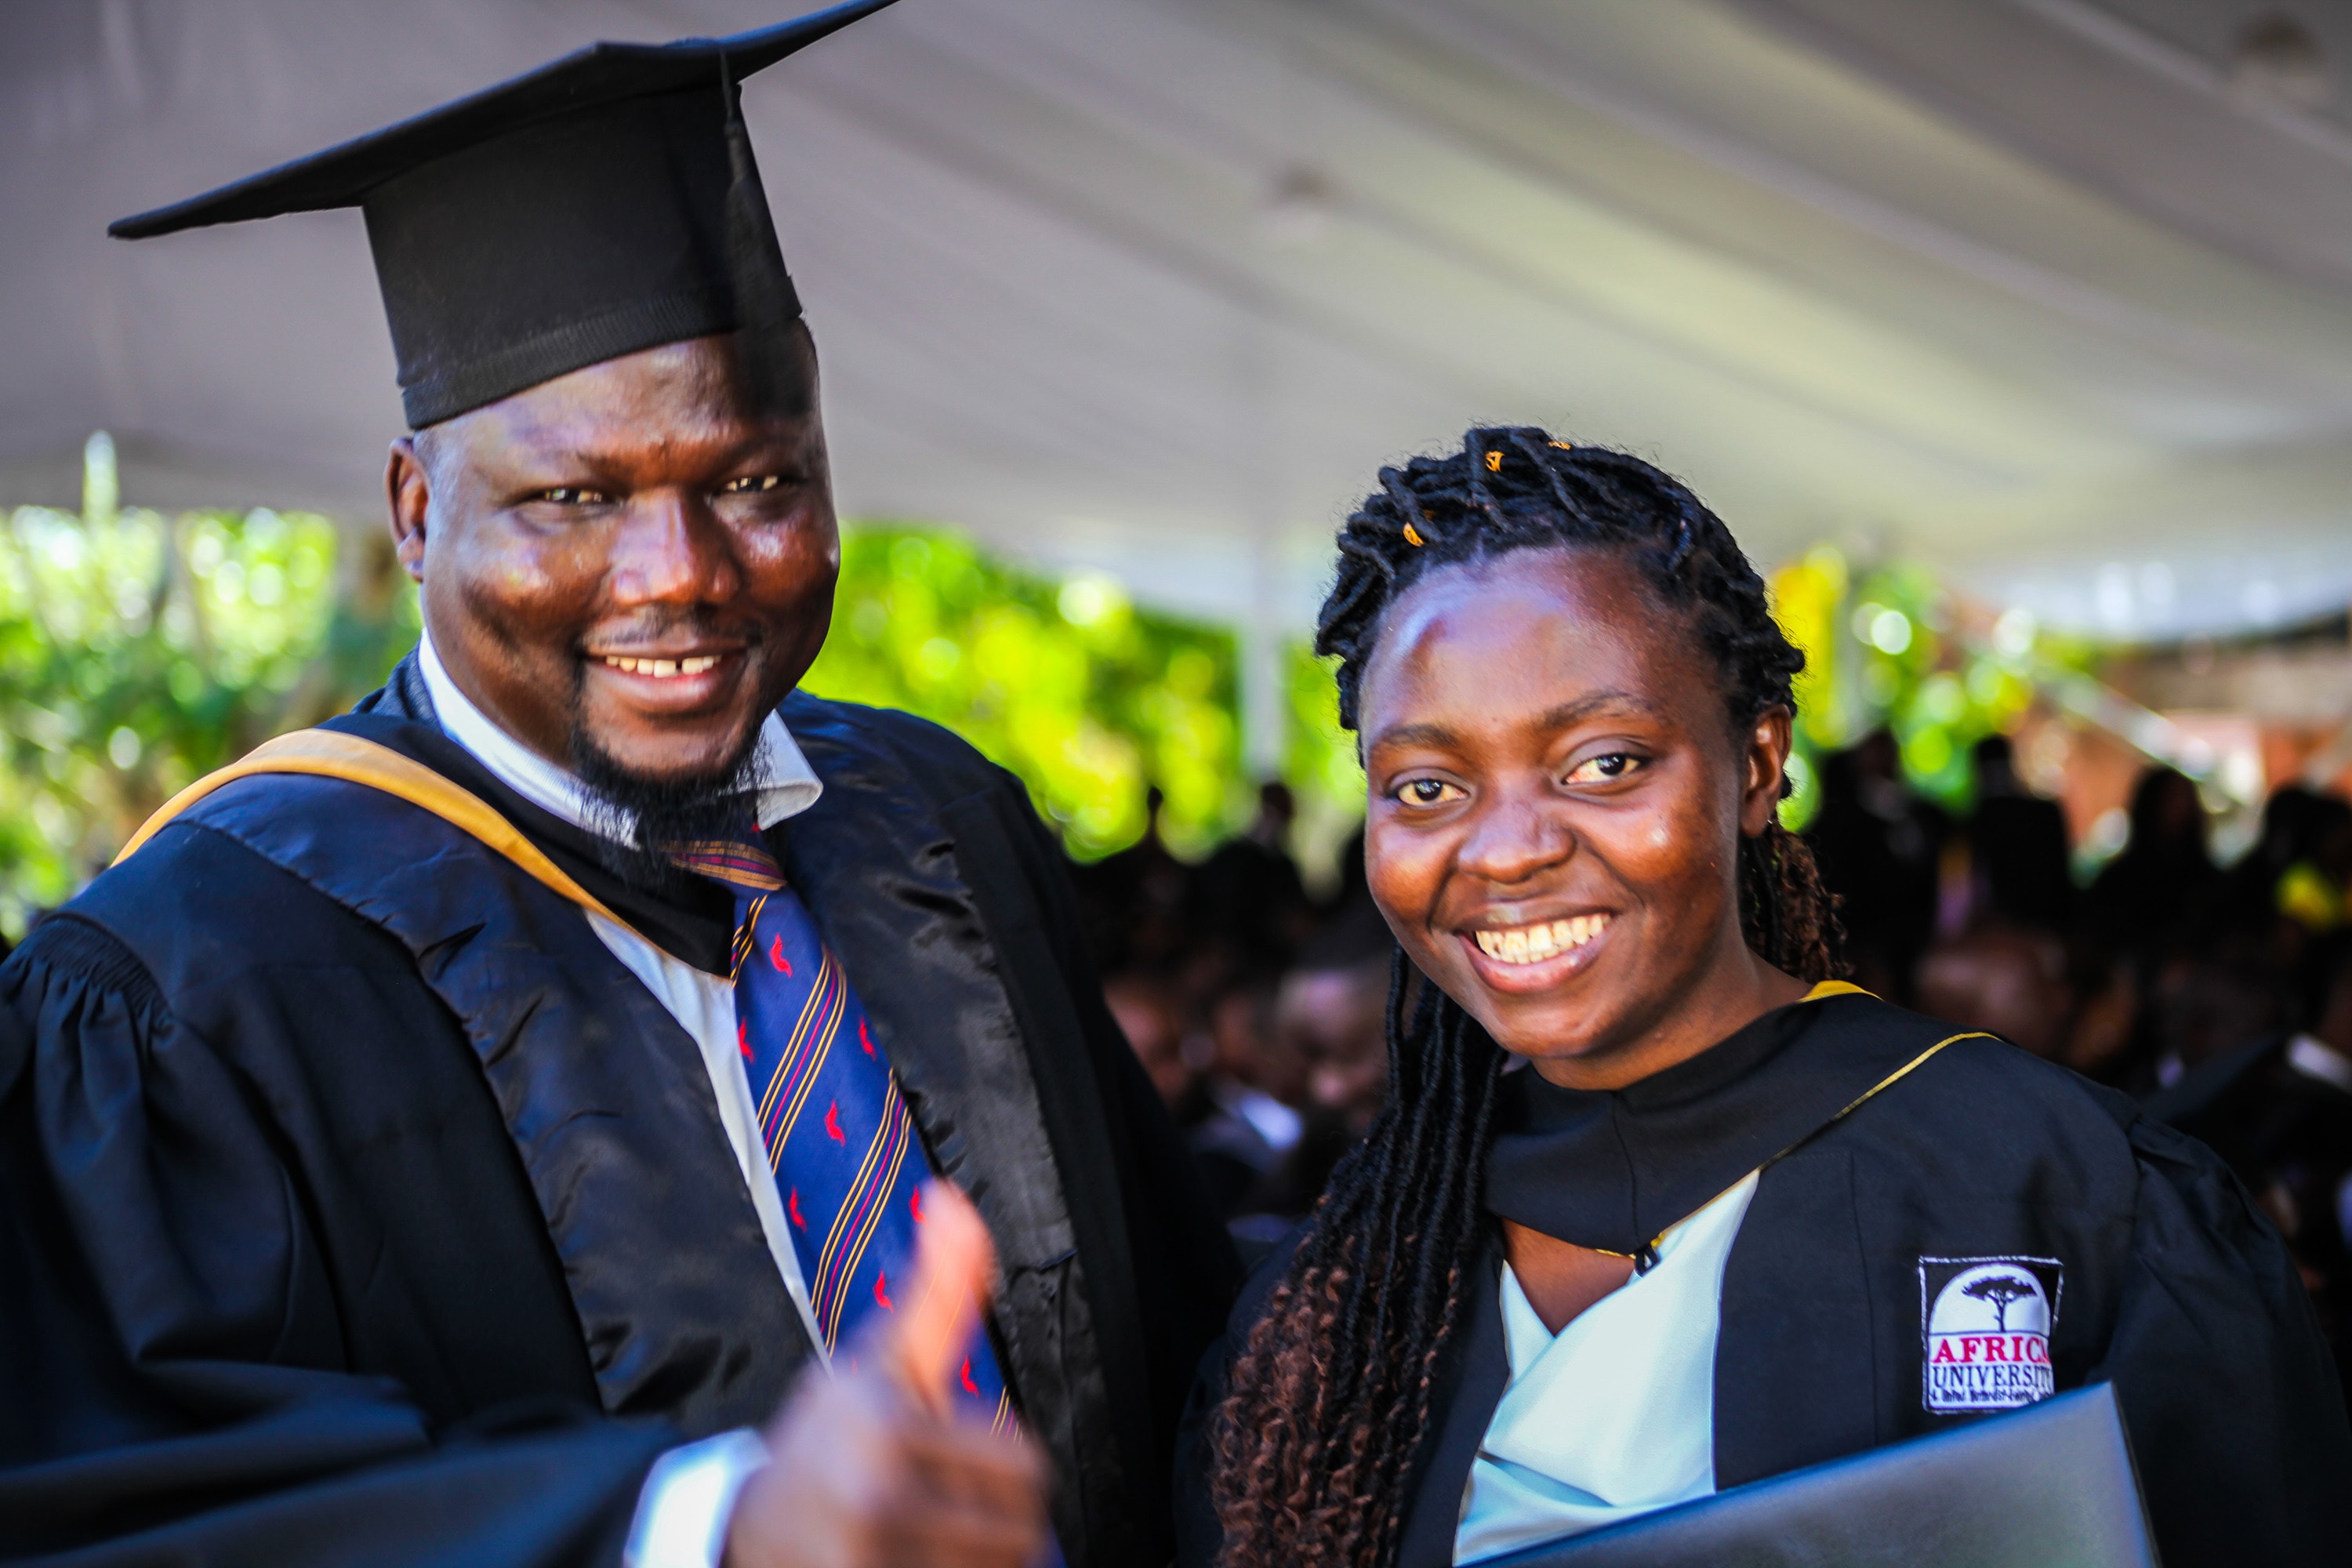 클로딘 미기샤 (우측)가 짐바브웨이 무타레에 위치한 아프리카대학교를 졸업하면서, 웨남 다발레씨로부터 축하를 받고 있다. 콩고의 고마 출신인 미기샤는 아프리카대학교 개교 25주년을 맞는 2019년의 졸업생 중 한 명이다. 다발레씨는 이 학교의 국제학생처장이다. 사진 제공, 아프리카대학교.